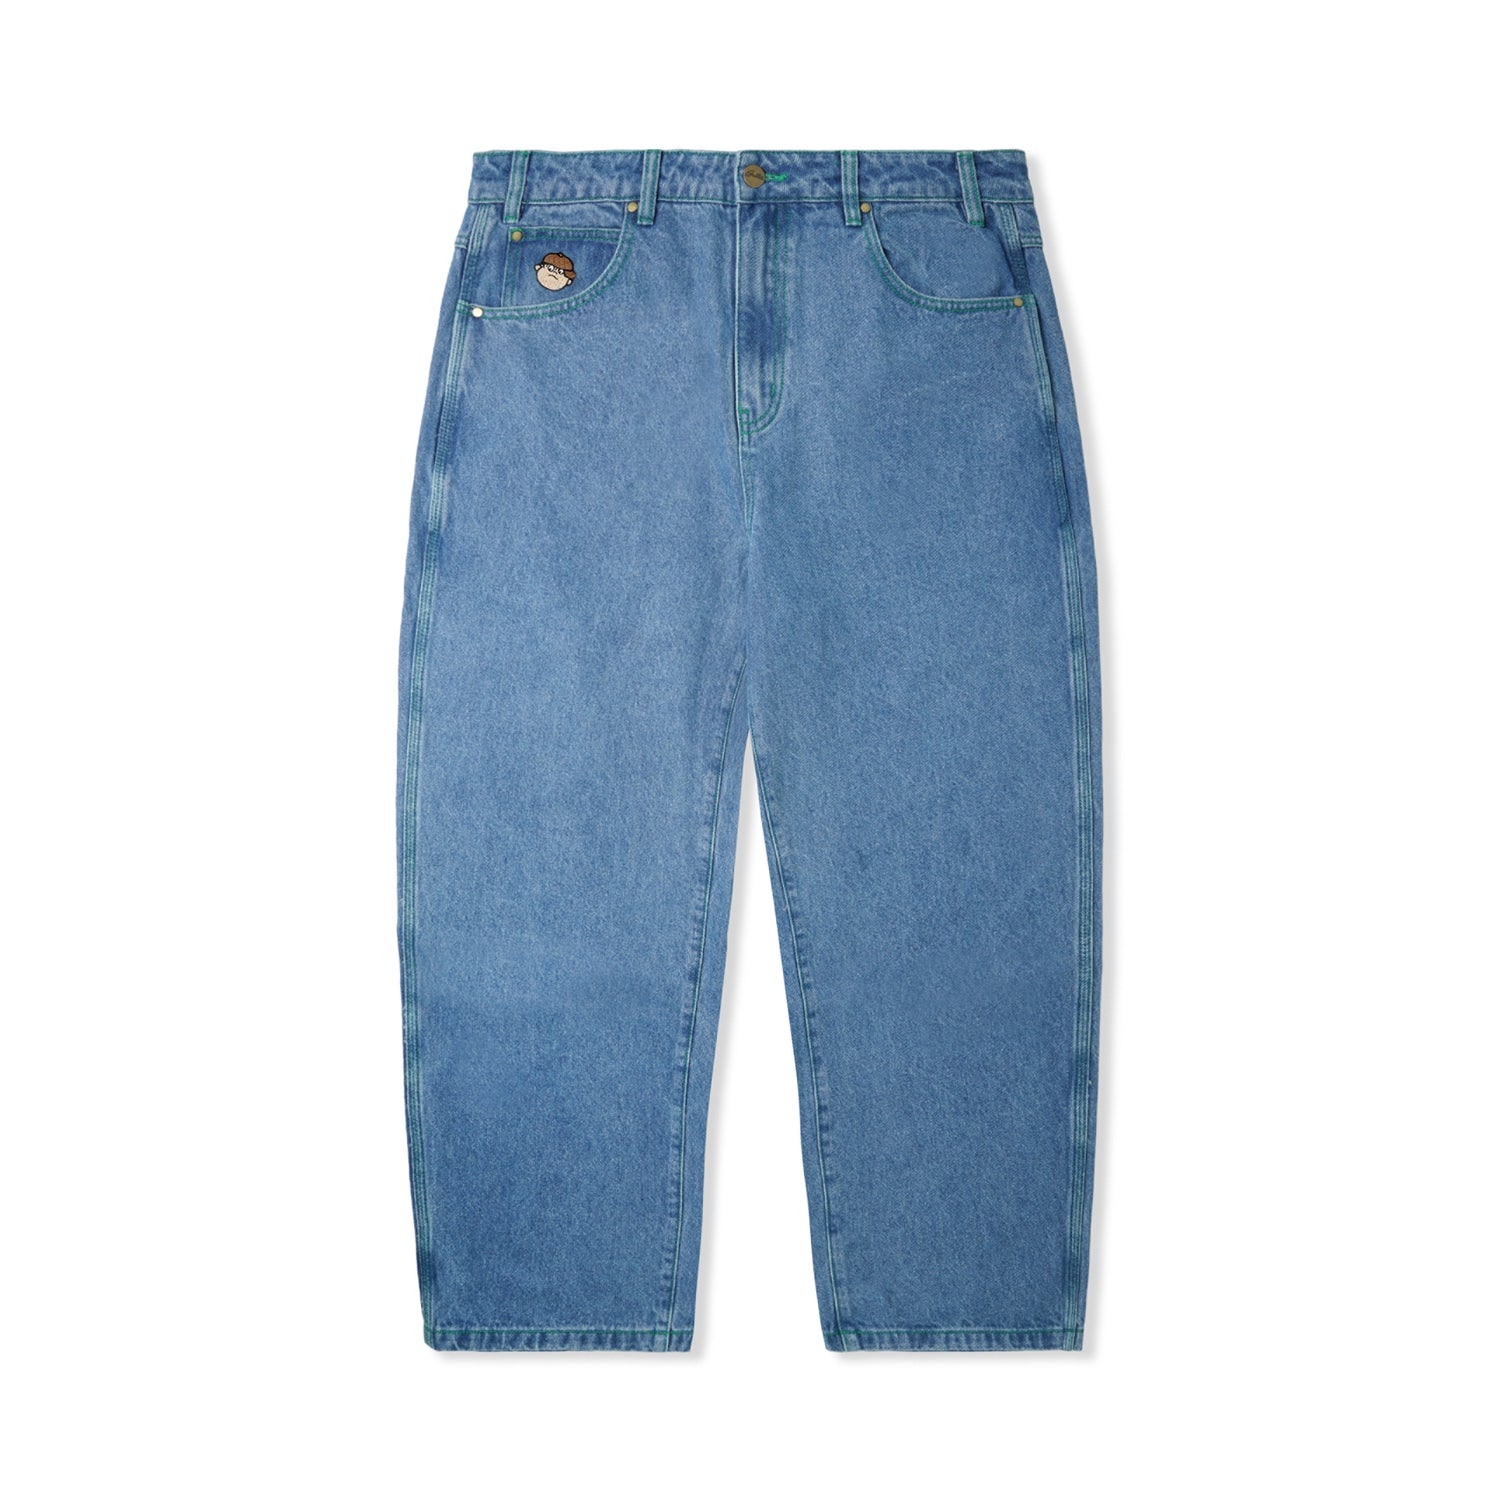 ButterGoods Santosuosso Denim Jeans - Washed Indigo